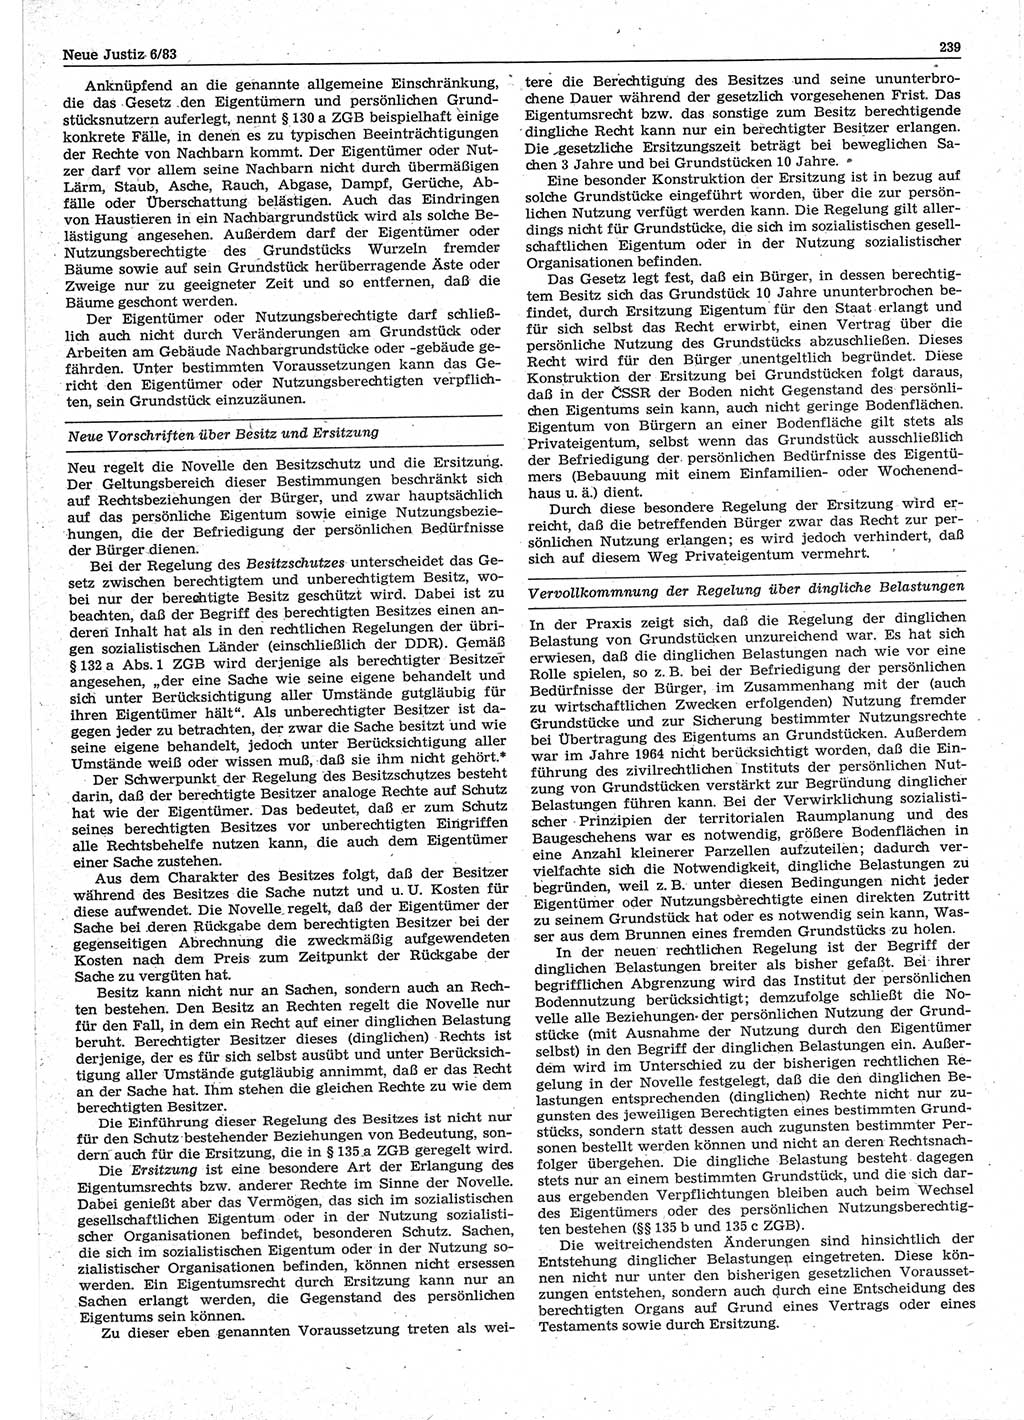 Neue Justiz (NJ), Zeitschrift für sozialistisches Recht und Gesetzlichkeit [Deutsche Demokratische Republik (DDR)], 37. Jahrgang 1983, Seite 239 (NJ DDR 1983, S. 239)